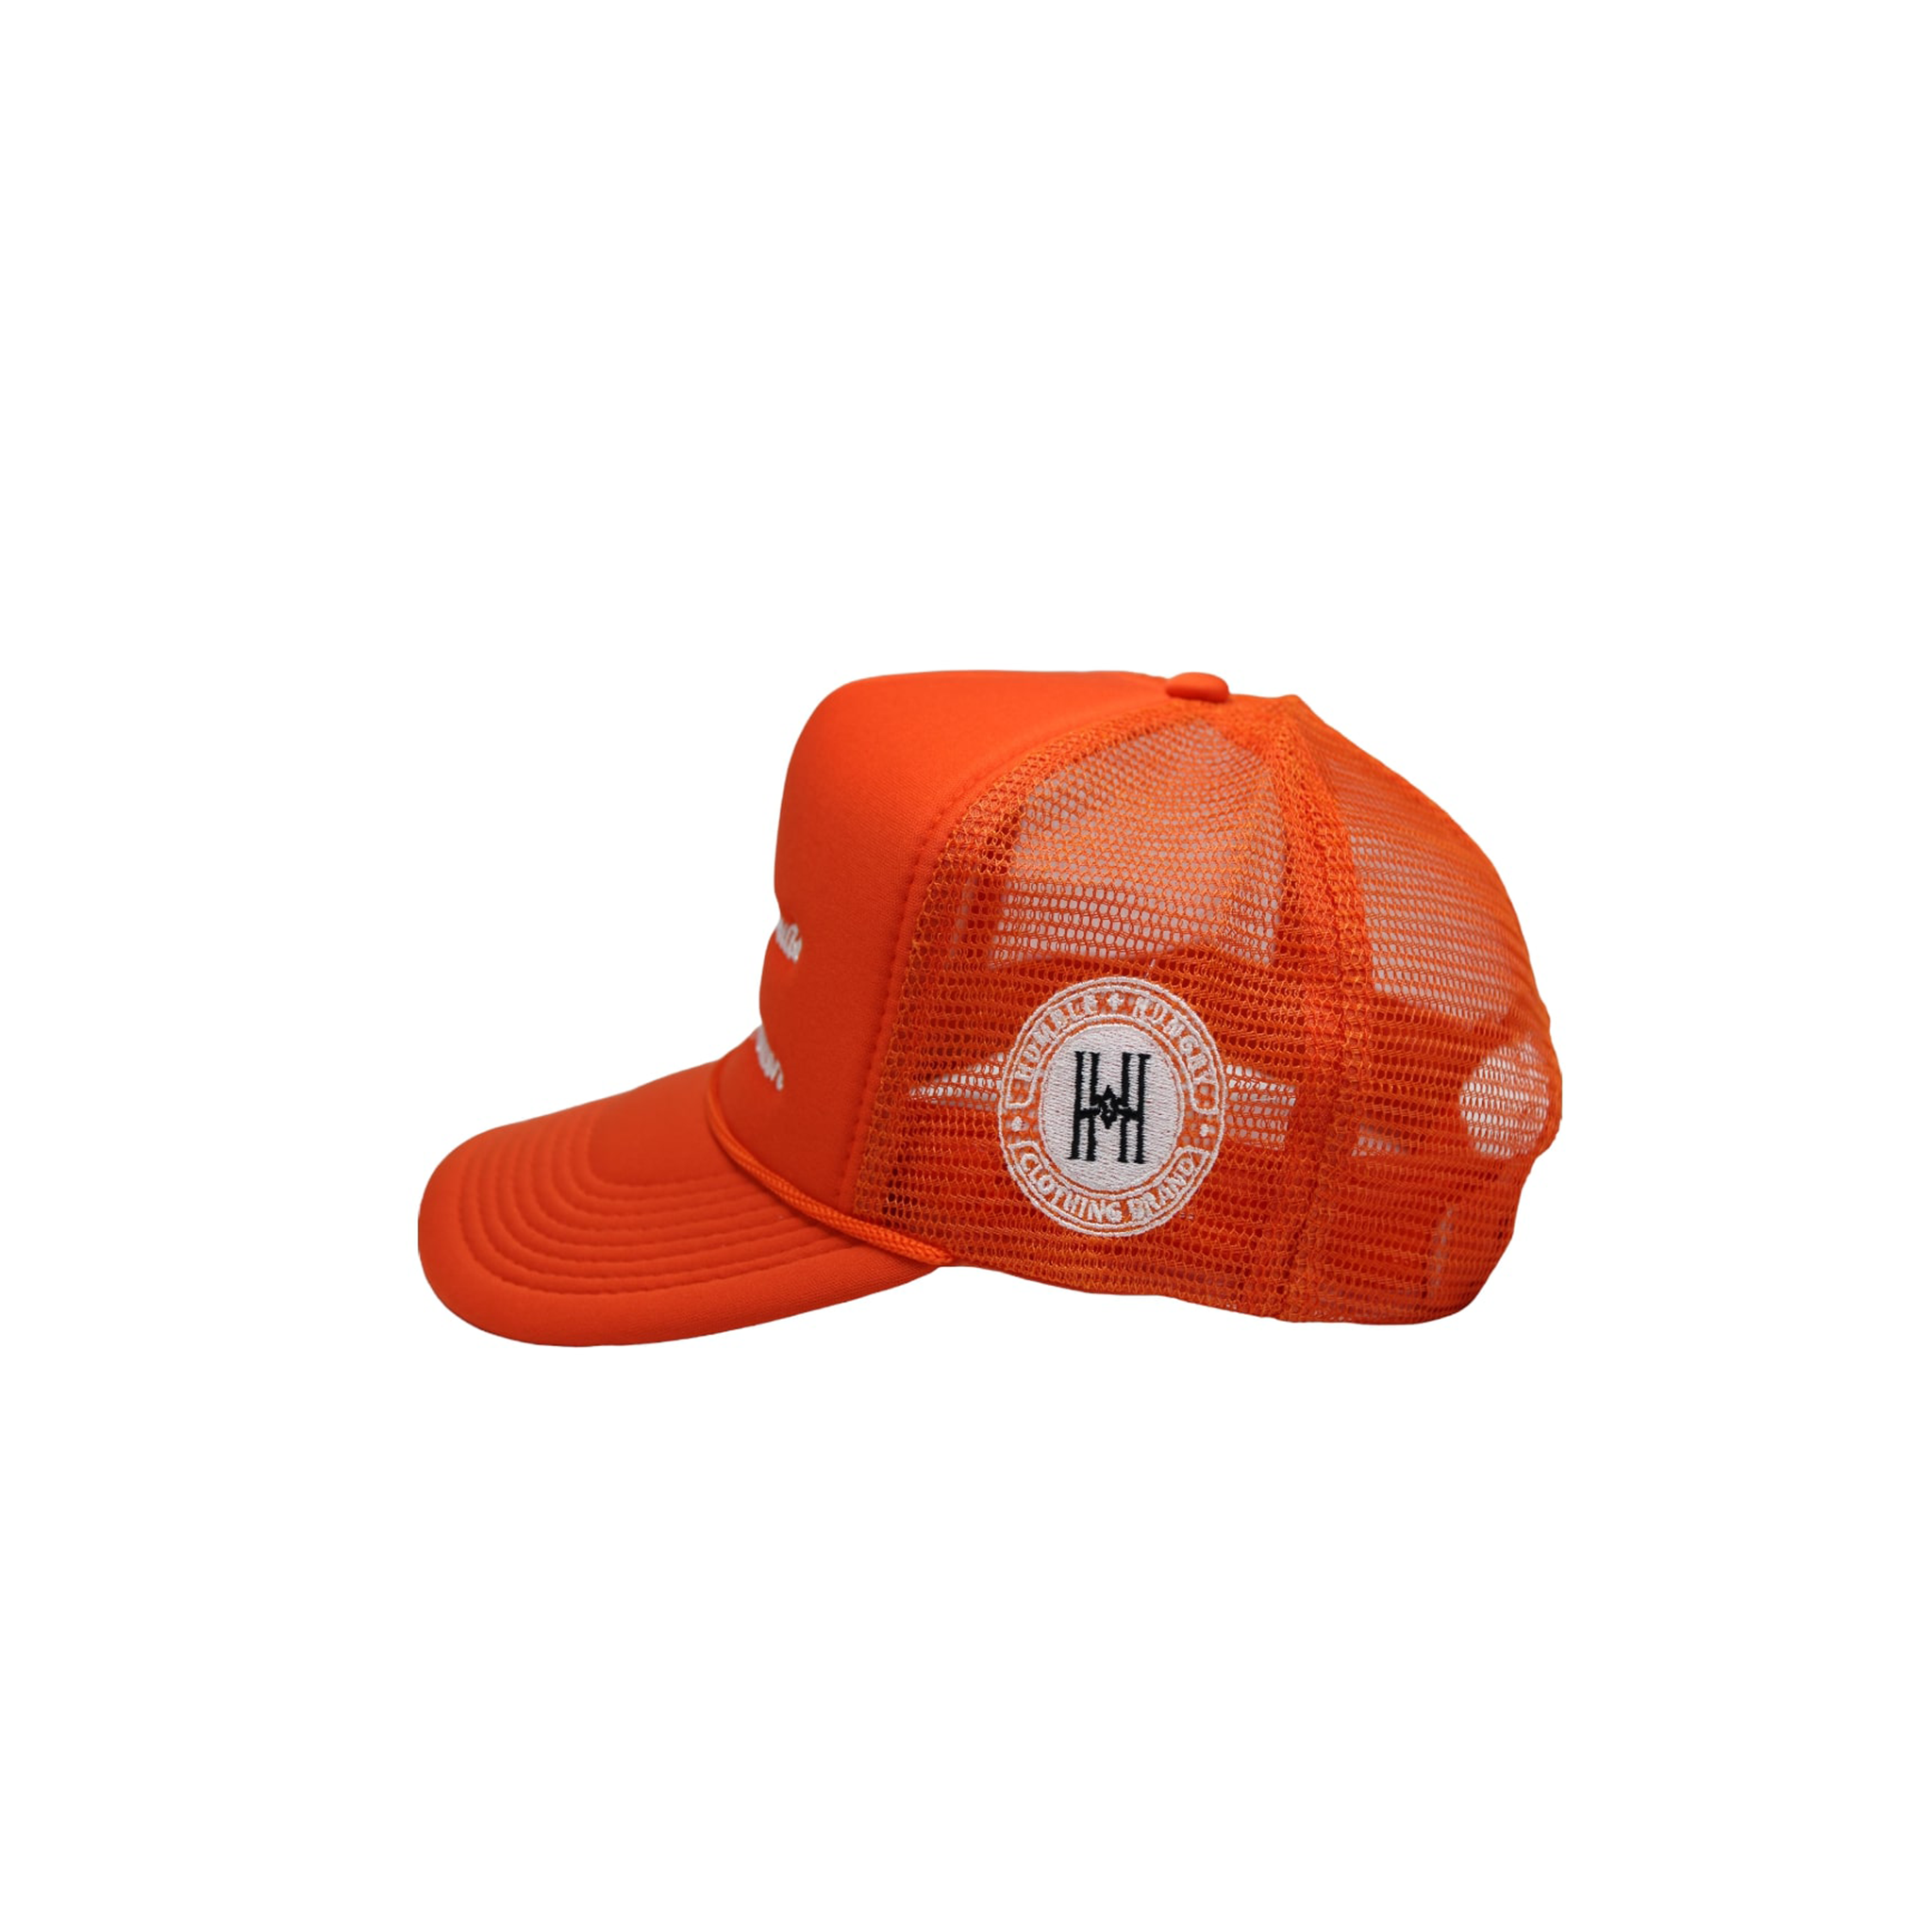 'All Ambition' Trucker Hat in Orange